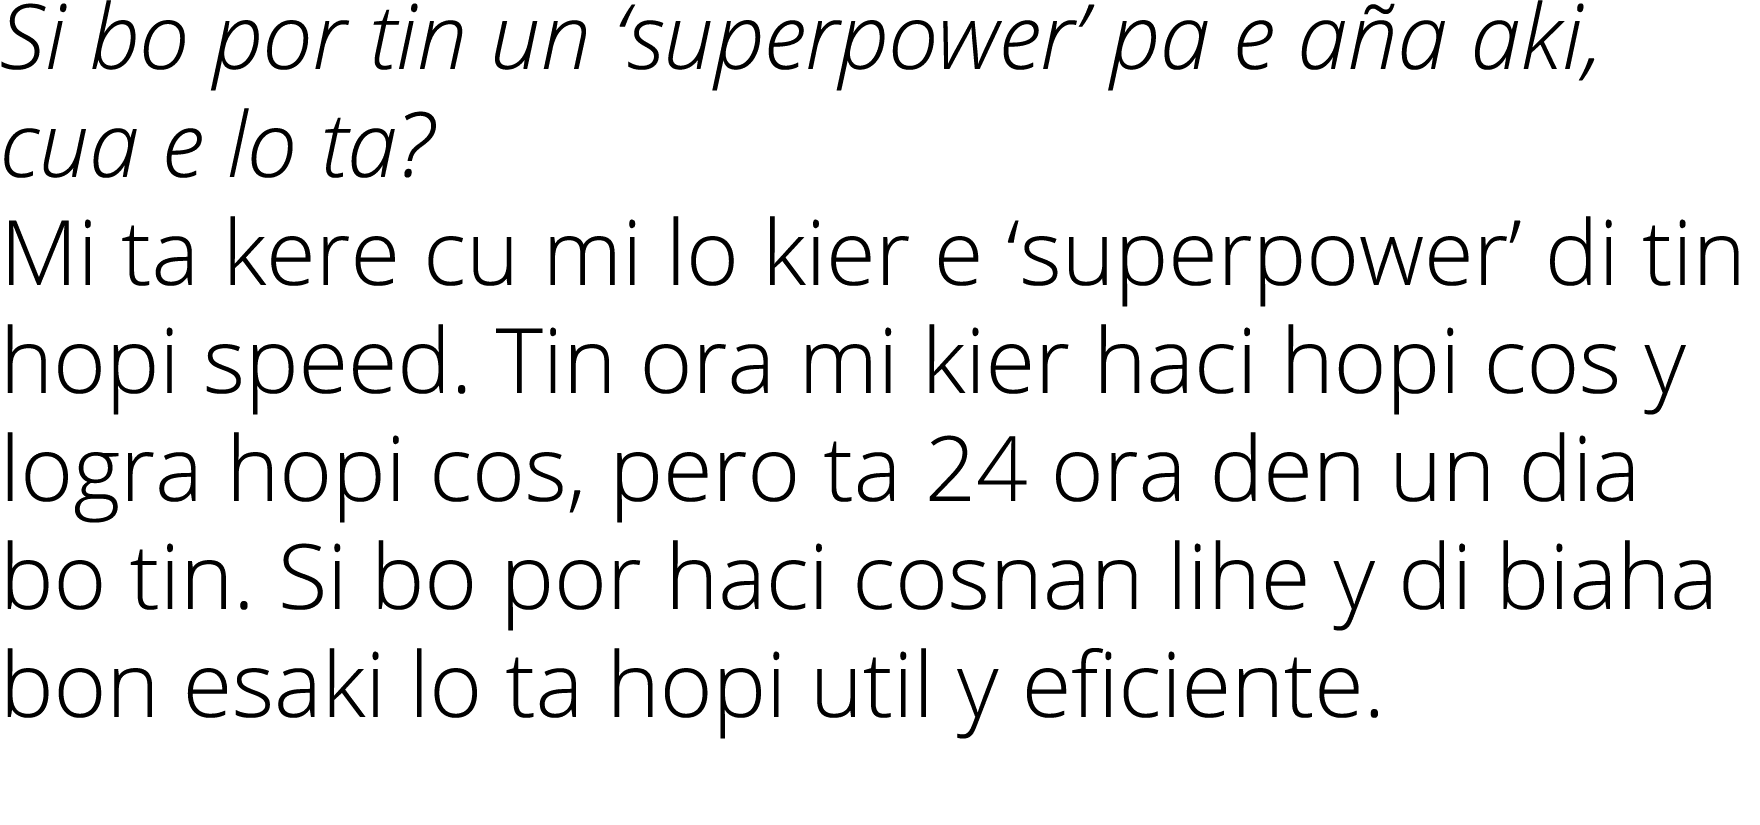 Si bo por tin un ‘superpower’ pa e a a aki, cua e lo ta? Mi ta kere cu mi lo kier e ‘superpower’ di tin hopi speed. T...